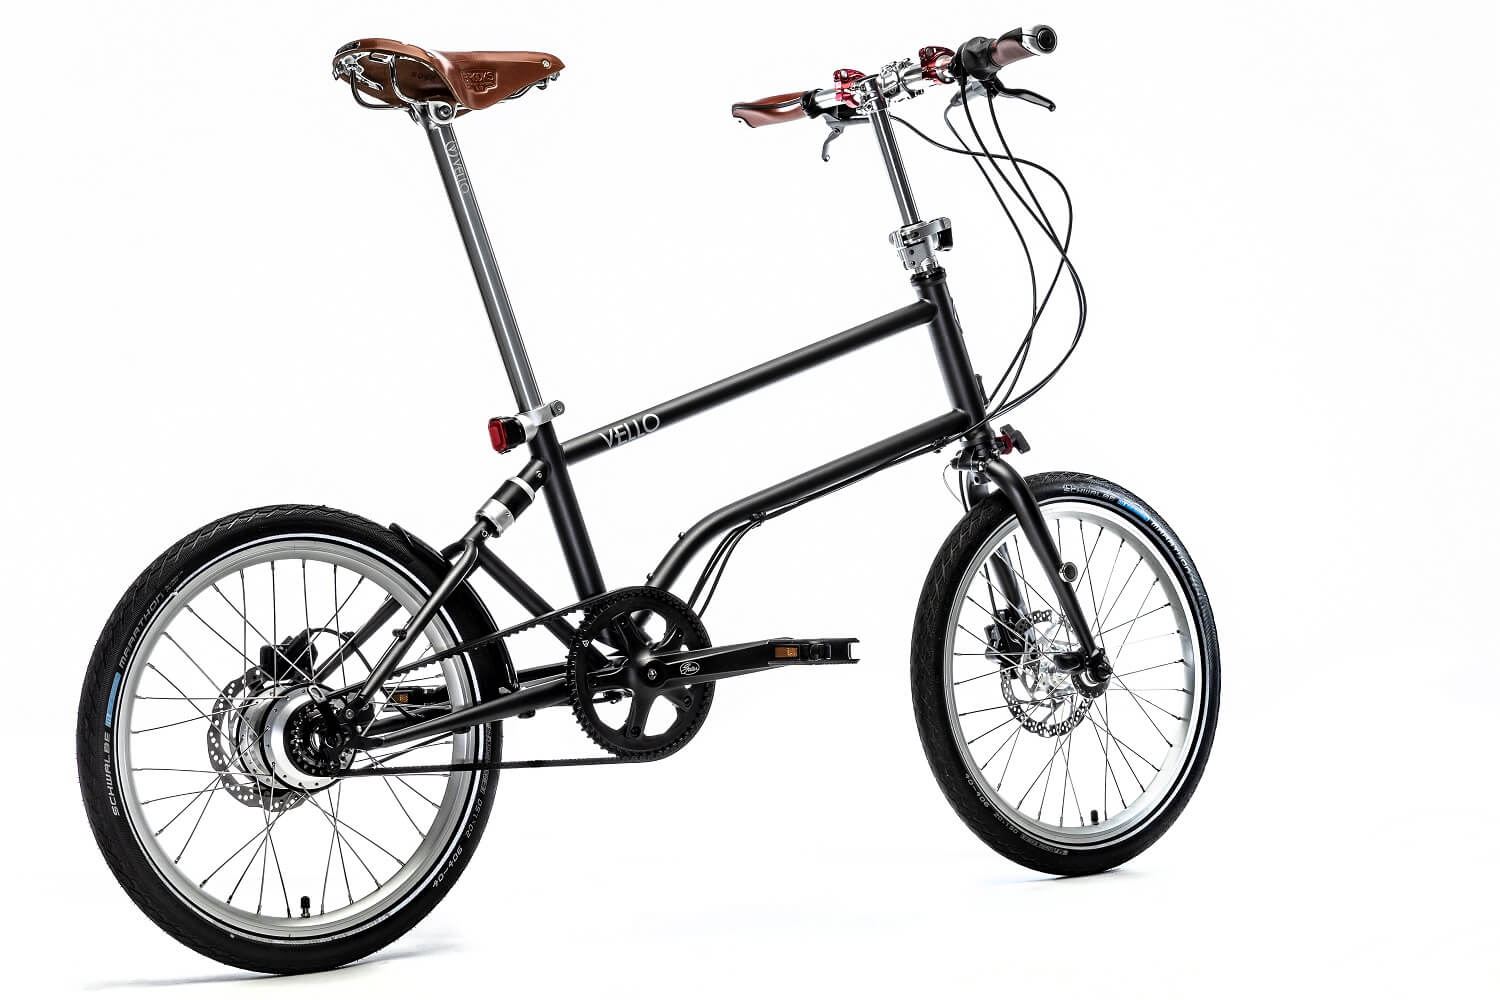 VELLO Rohloff Special Edition Luxury Folding Bike - Leather Saddle Brooks - Rohloff Handmade Speedhub